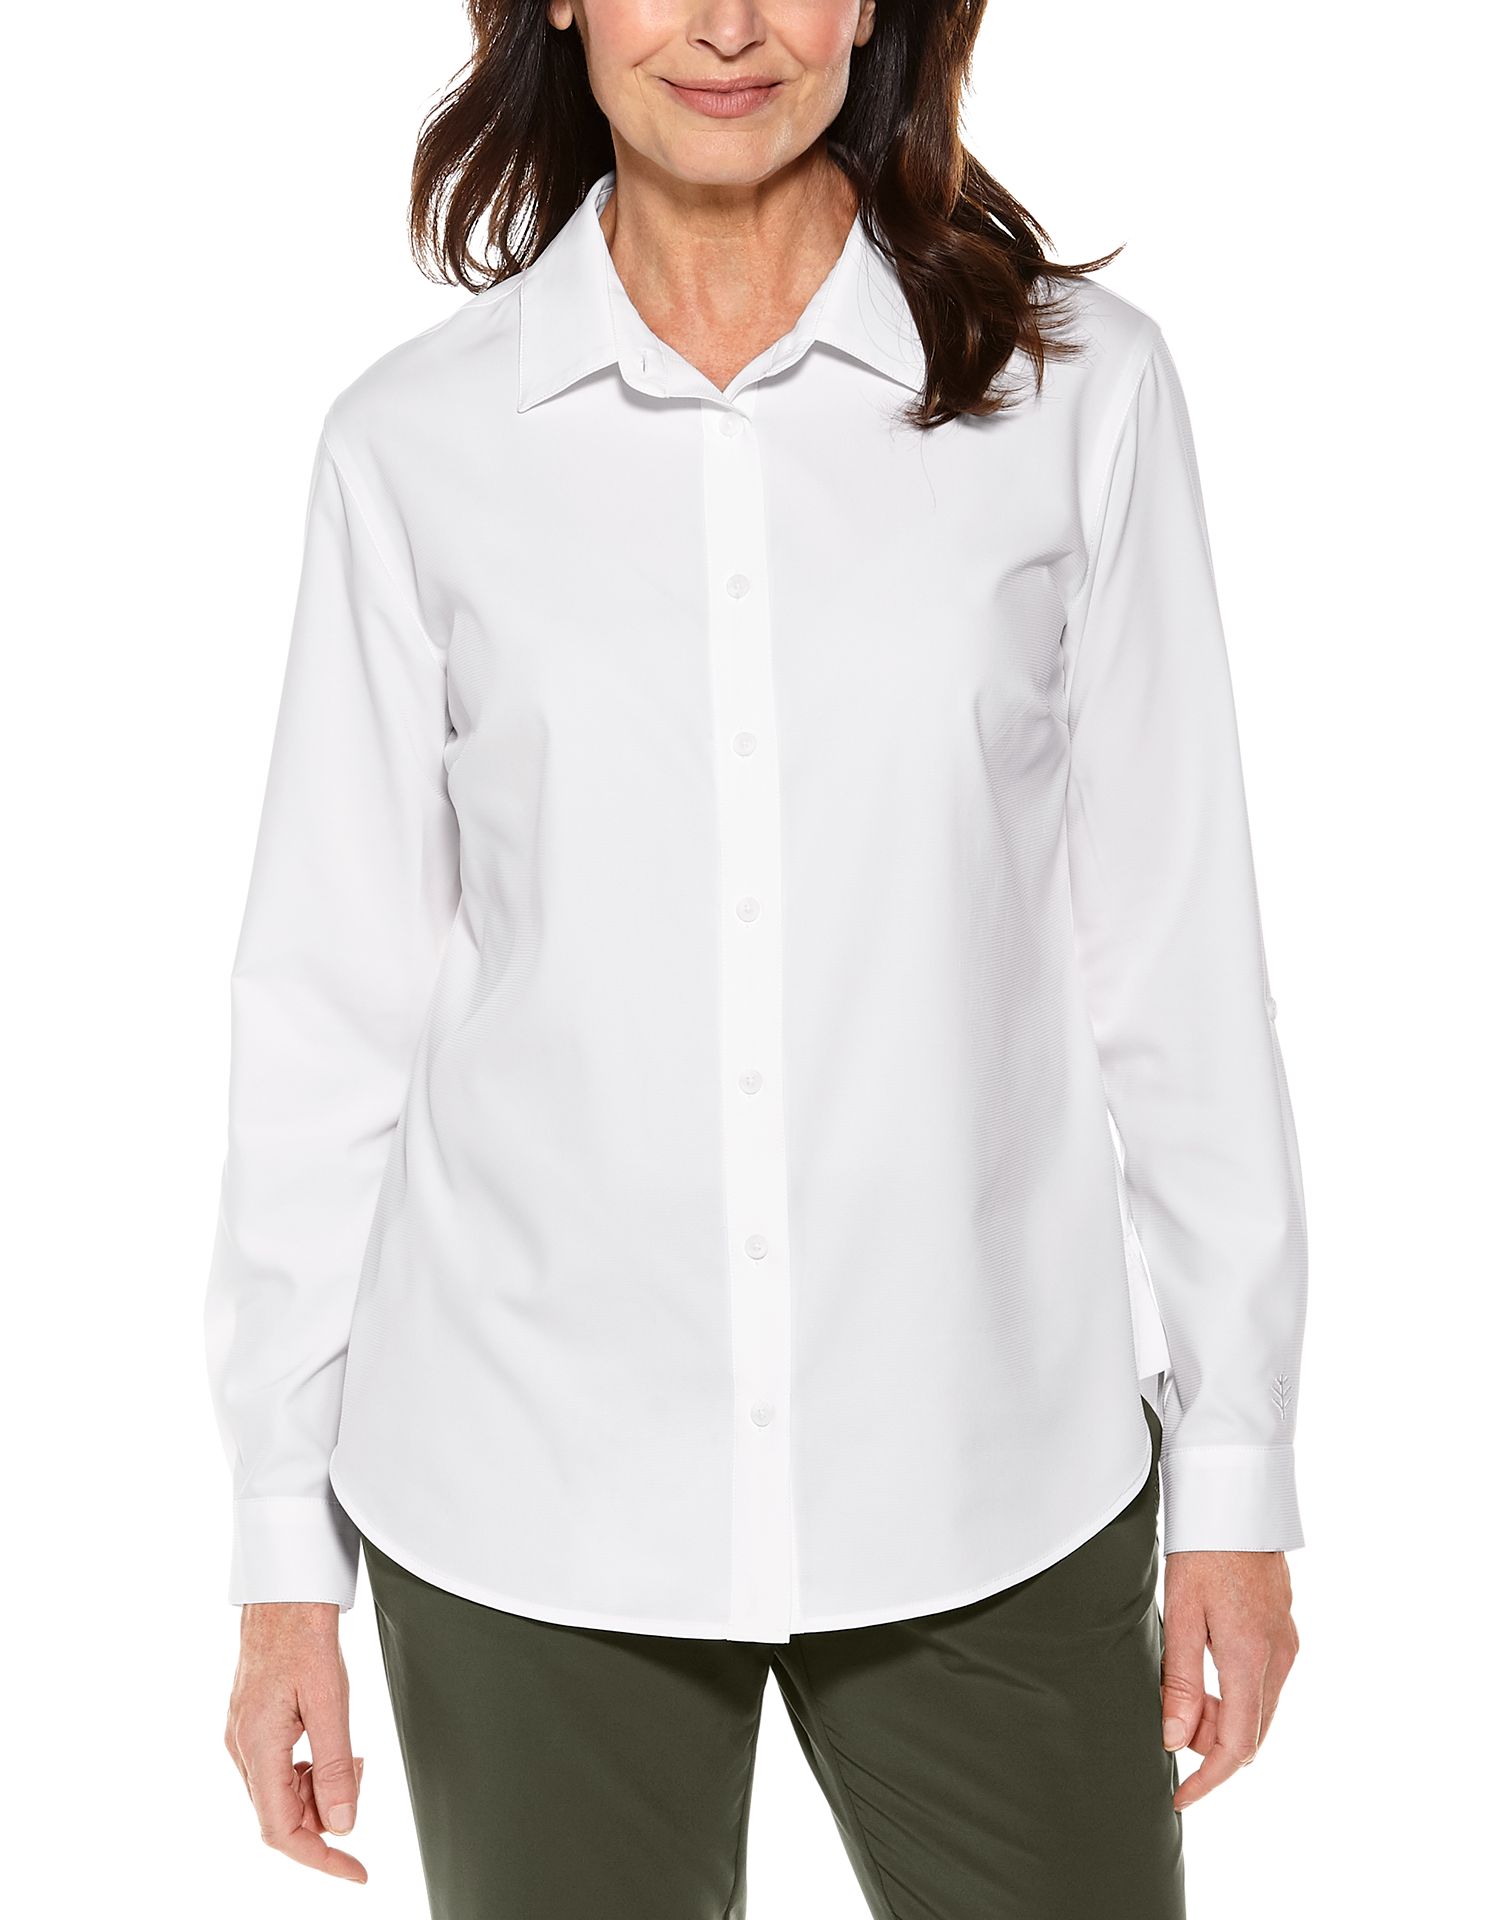 Coolibar - UV Shirt for women - Hepburn Blouse - White